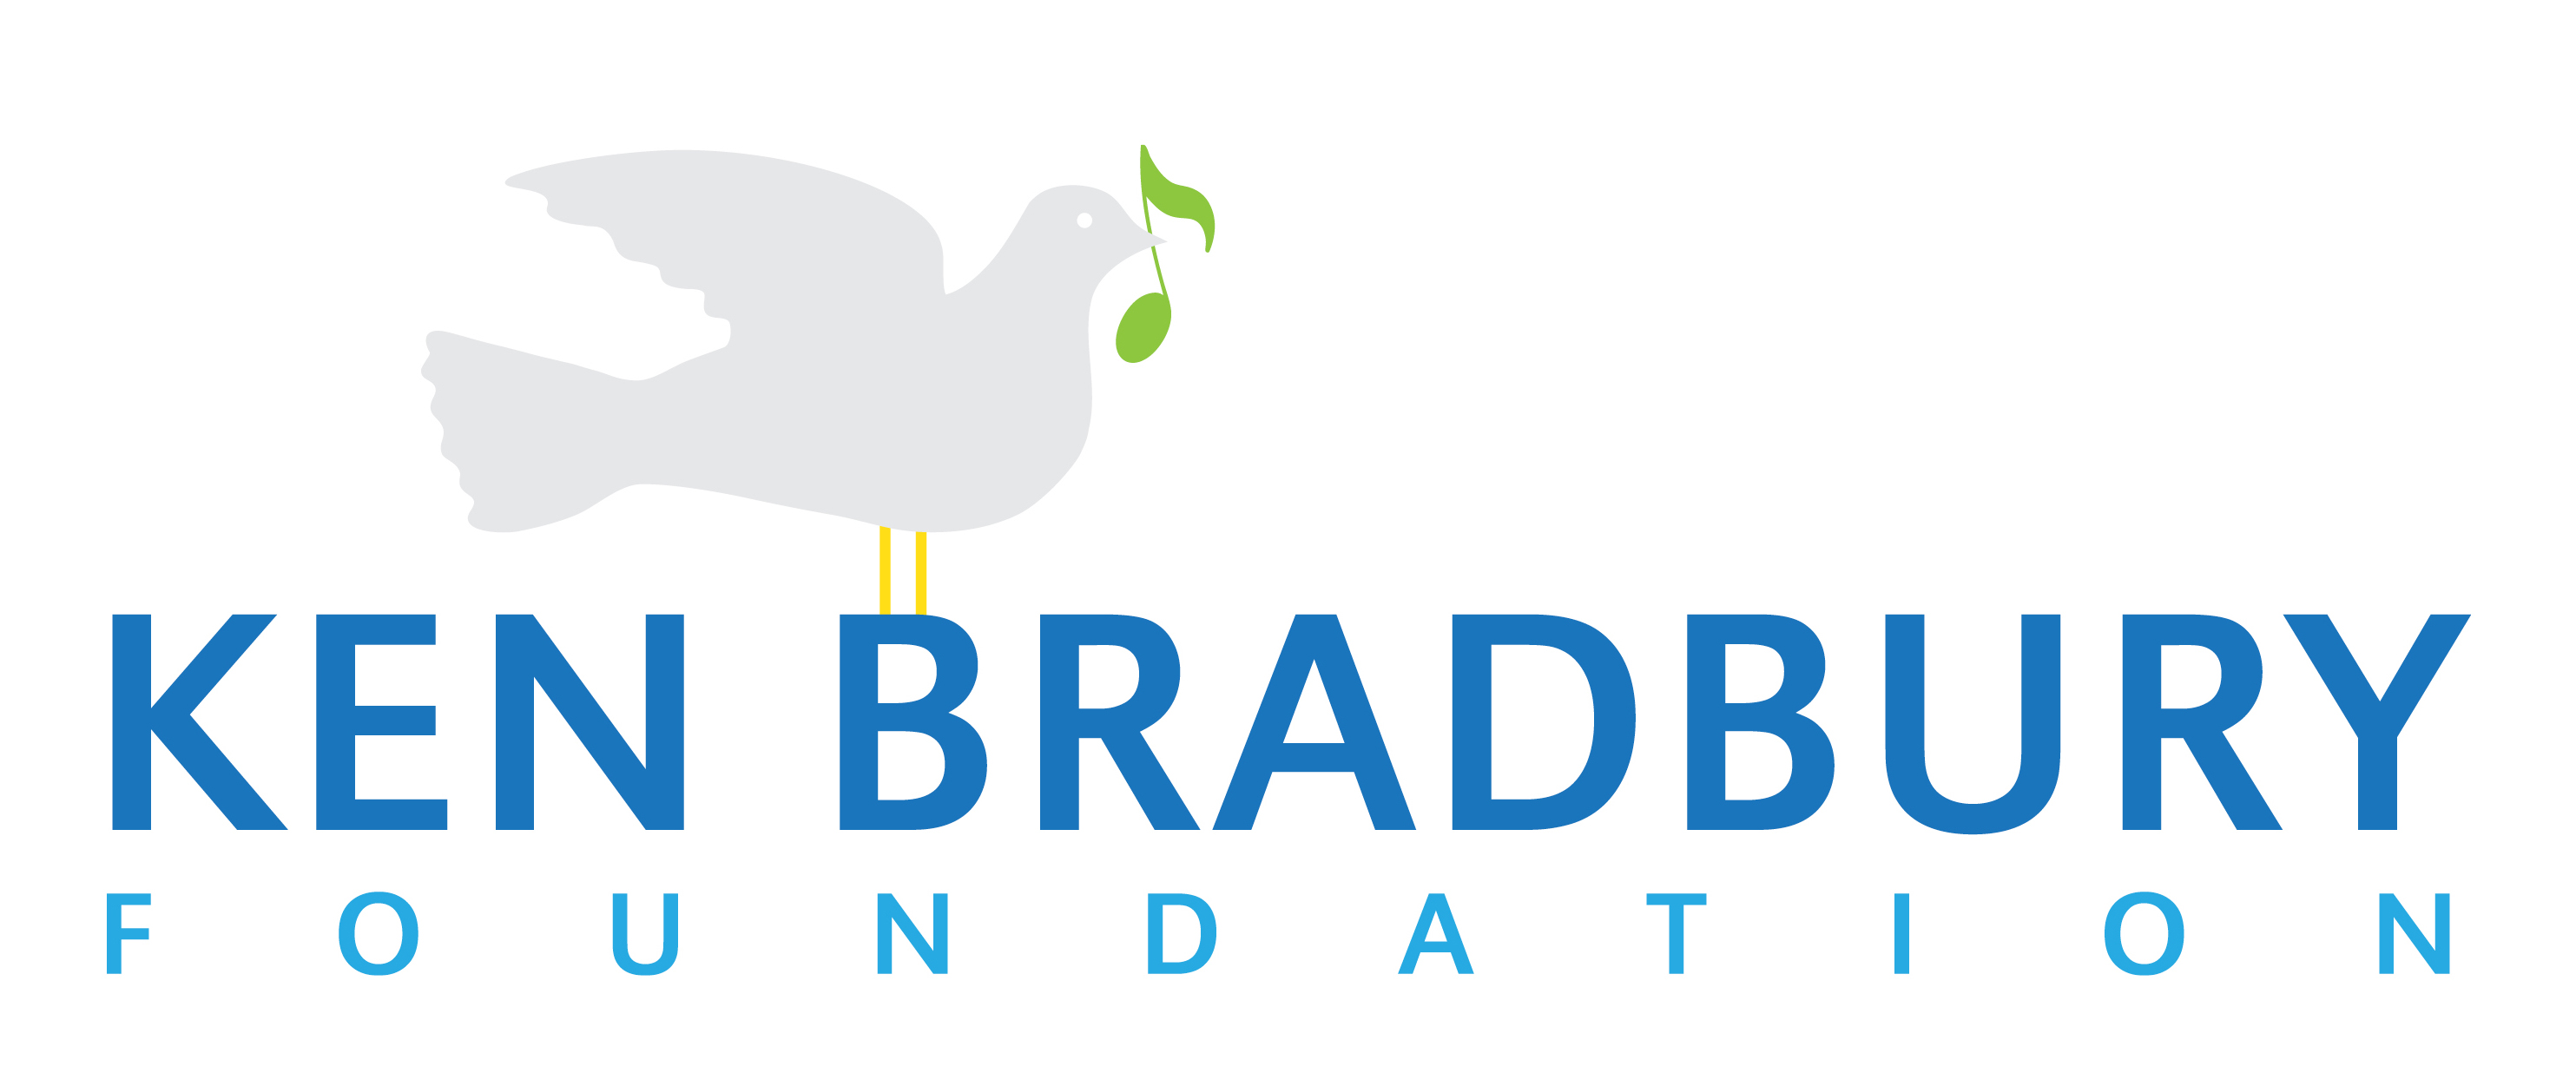 Ken Bradbury Foundation logo